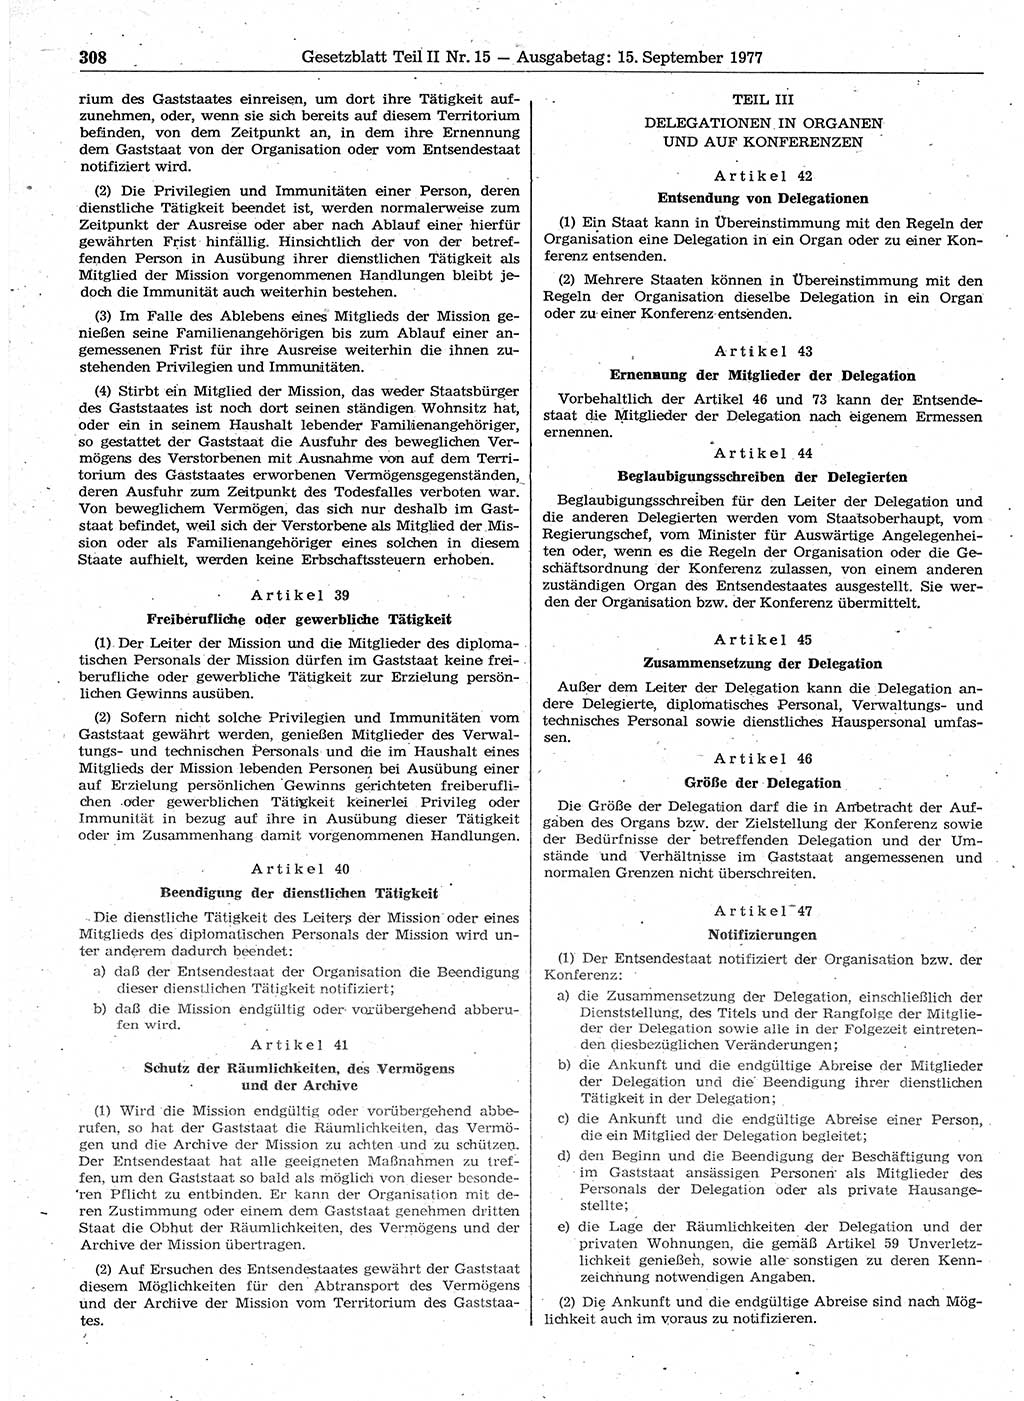 Gesetzblatt (GBl.) der Deutschen Demokratischen Republik (DDR) Teil ⅠⅠ 1977, Seite 308 (GBl. DDR ⅠⅠ 1977, S. 308)